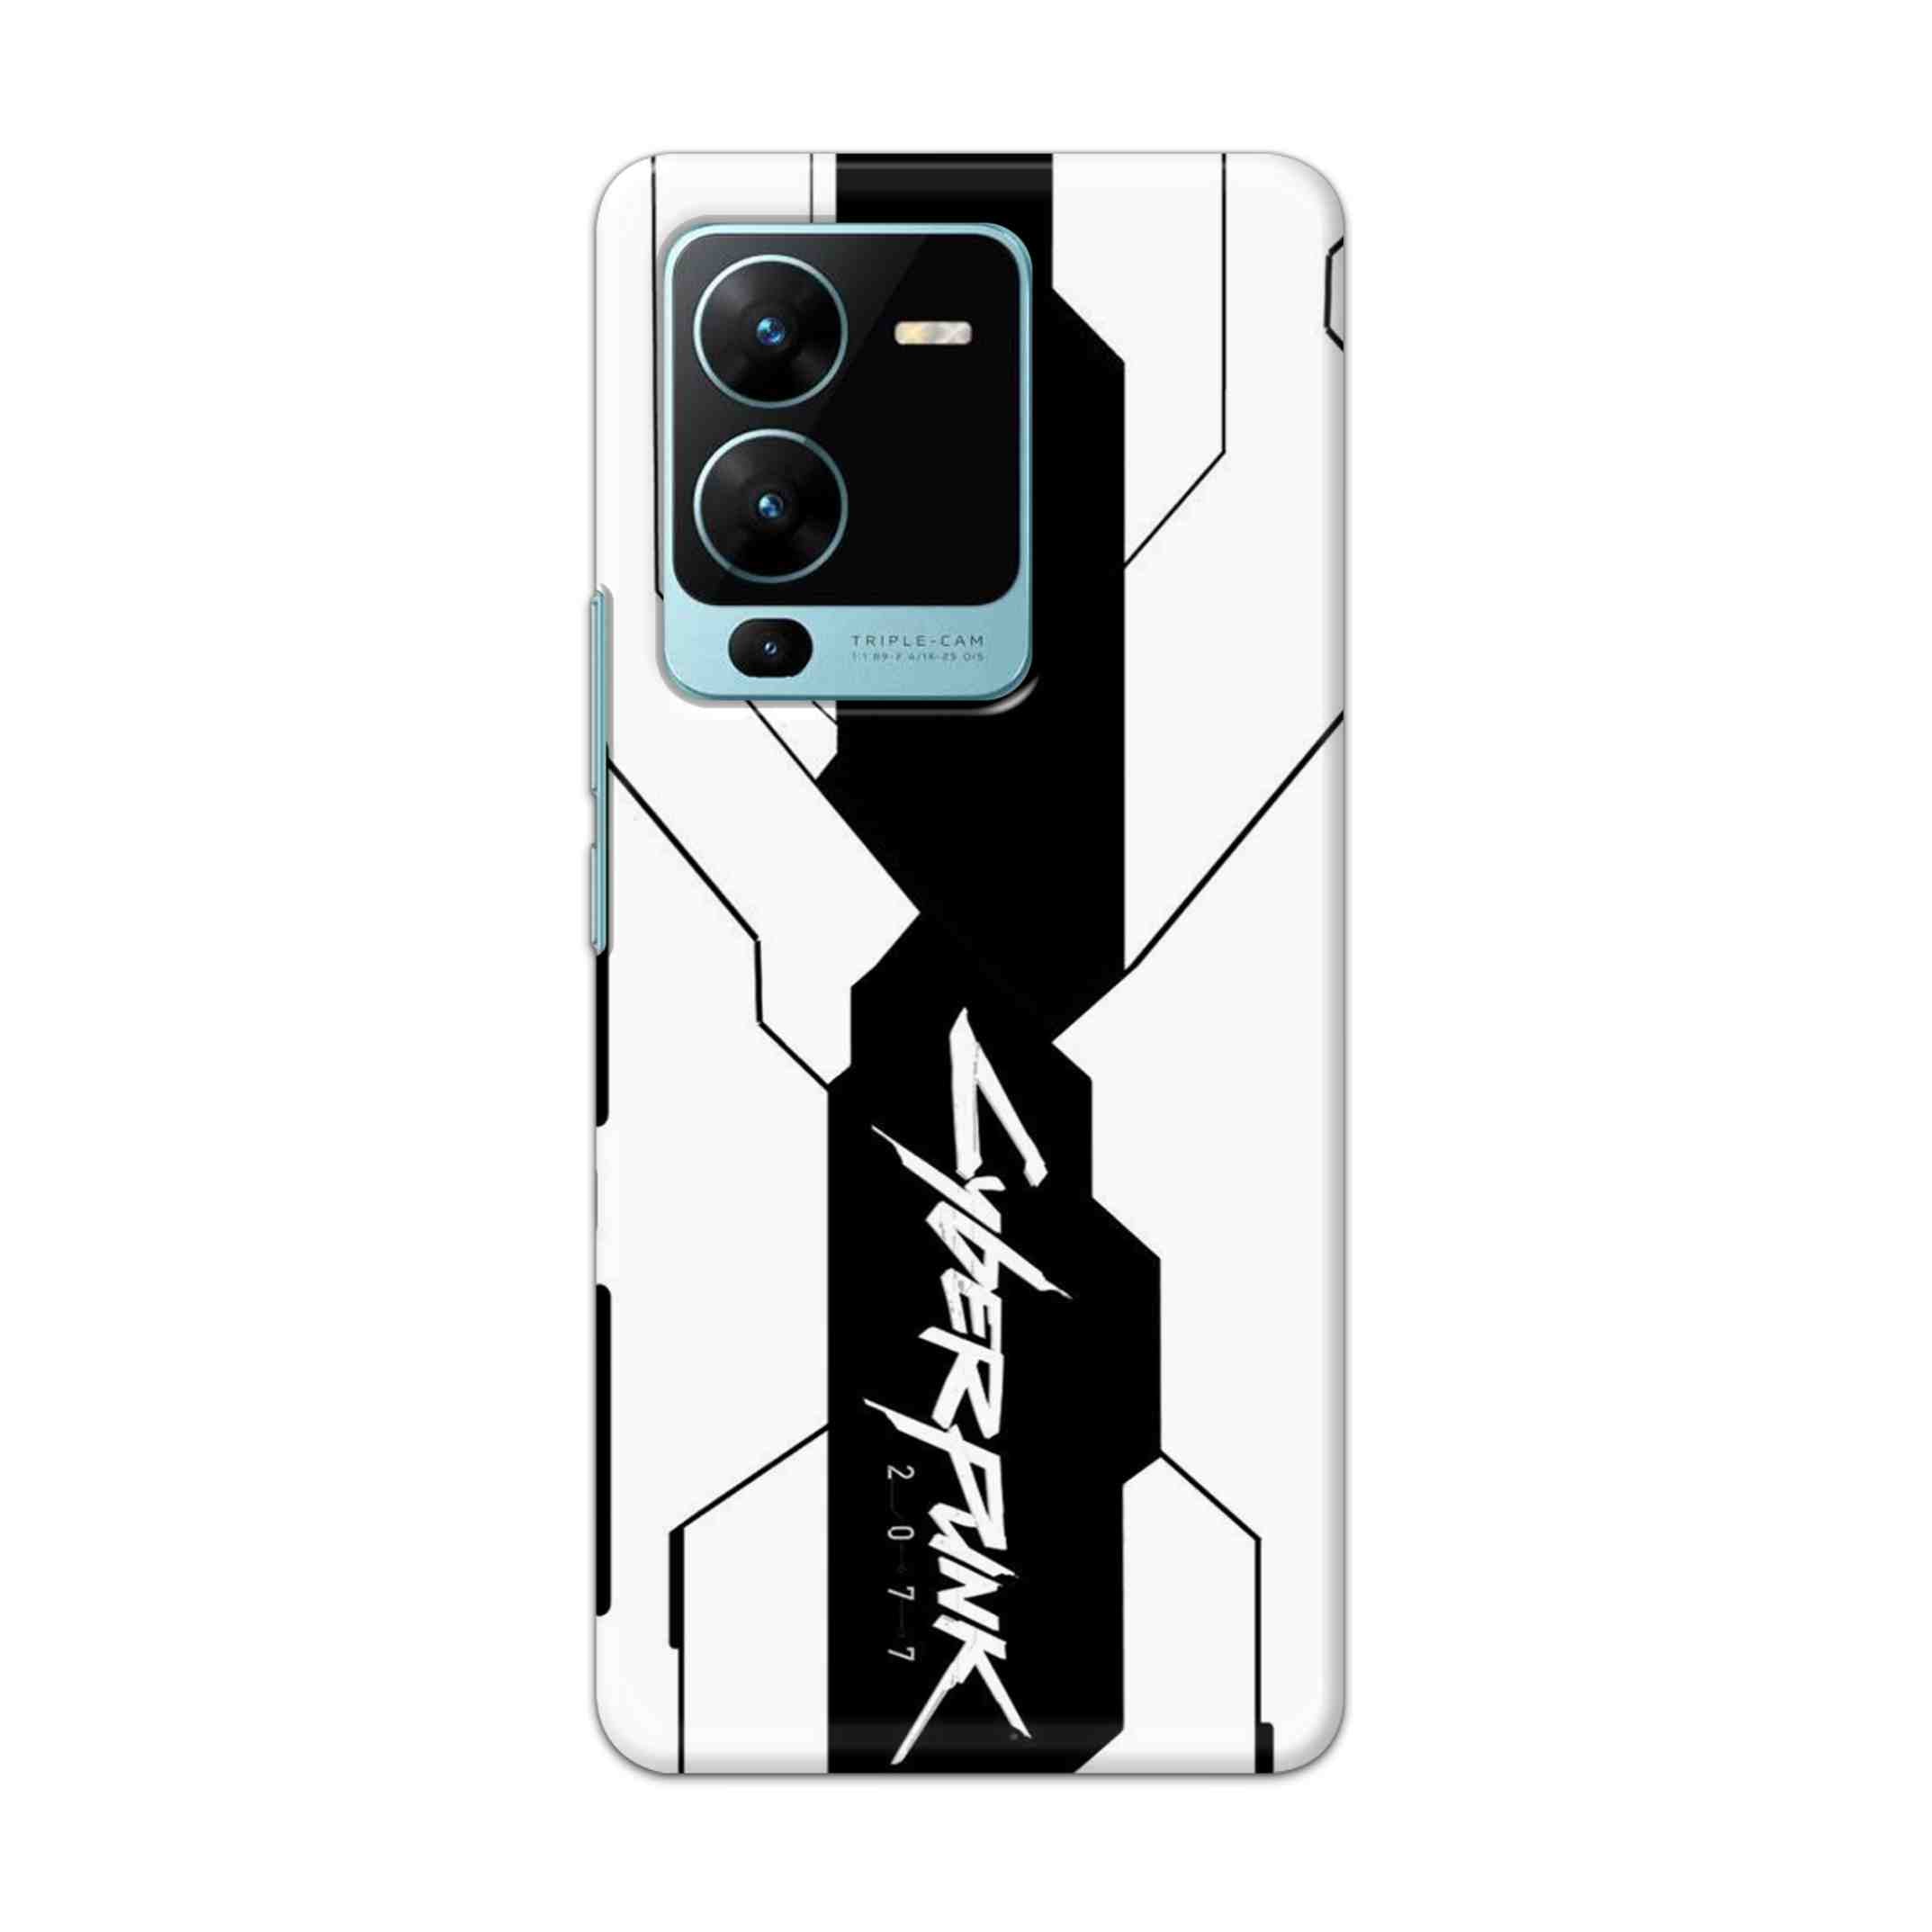 Buy Cyberpunk 2077 Hard Back Mobile Phone Case Cover For Vivo V25 Pro Online